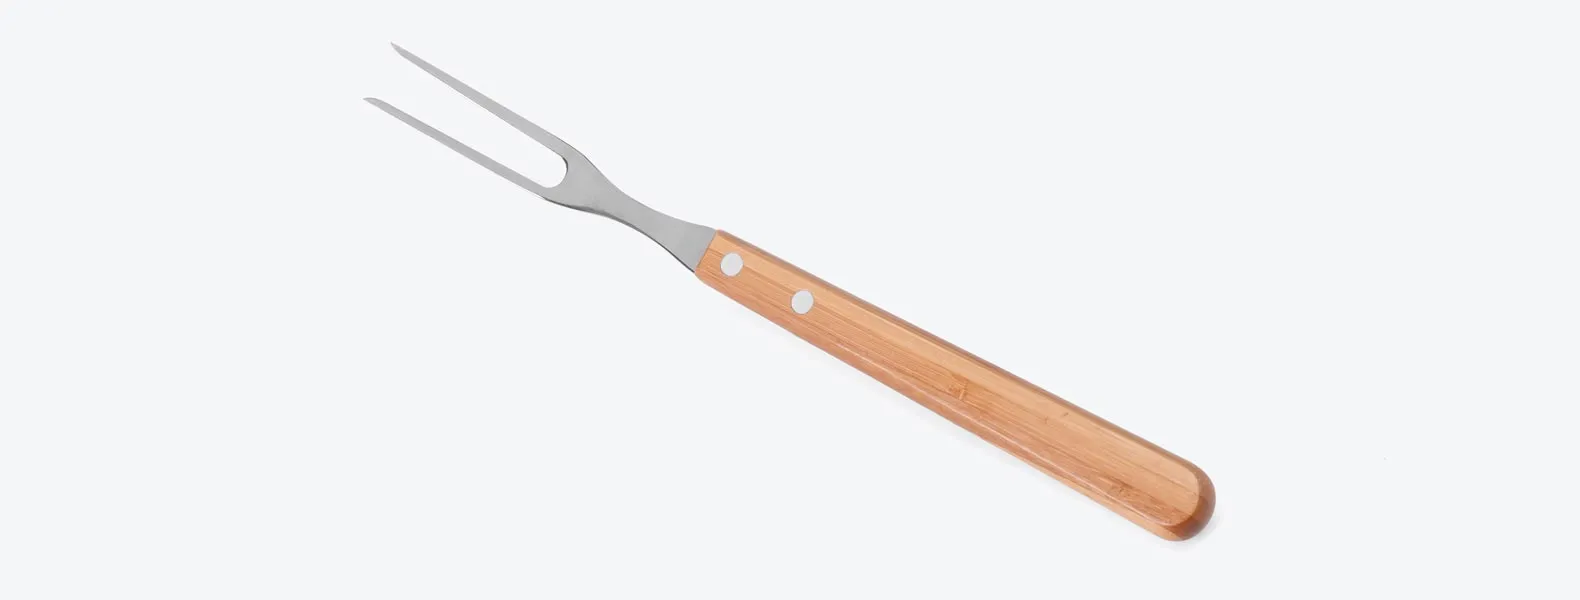 Kit de Faca em Bambu/Aço Inox com faca 8'' e garfo em Bambu/Inox. Rebites em Aço Inox 304, um dos mais resistentes à ferrugem e corrosão. Como cortesia, na faca 8 fazemos uma gravação com os cortes do boi.